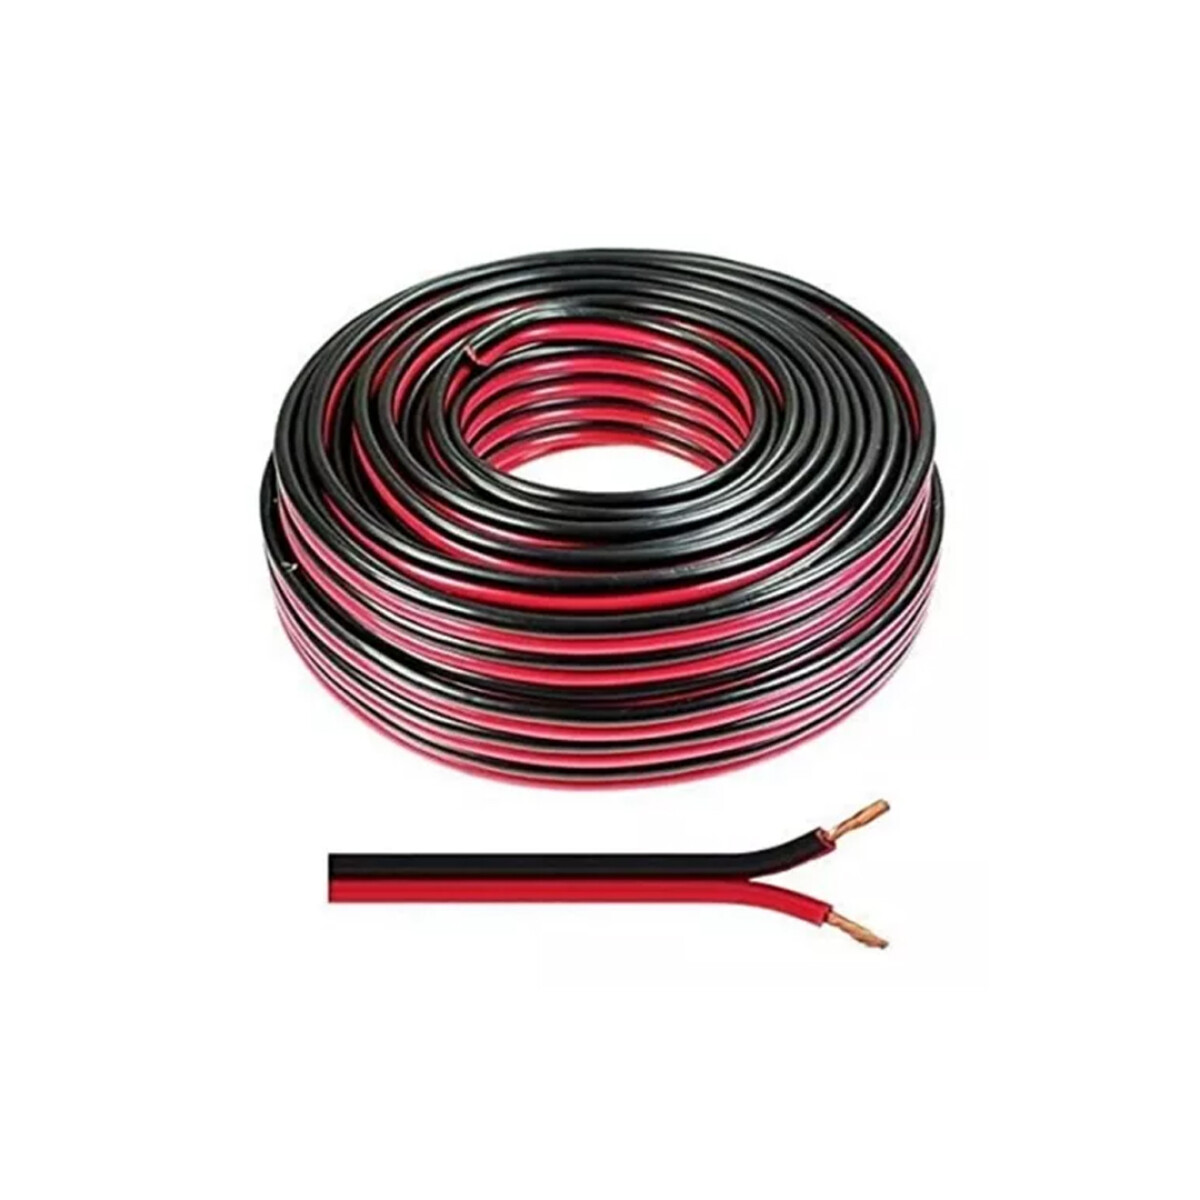 Cable Gemelo - 0,5 mm Rojo y Negro 